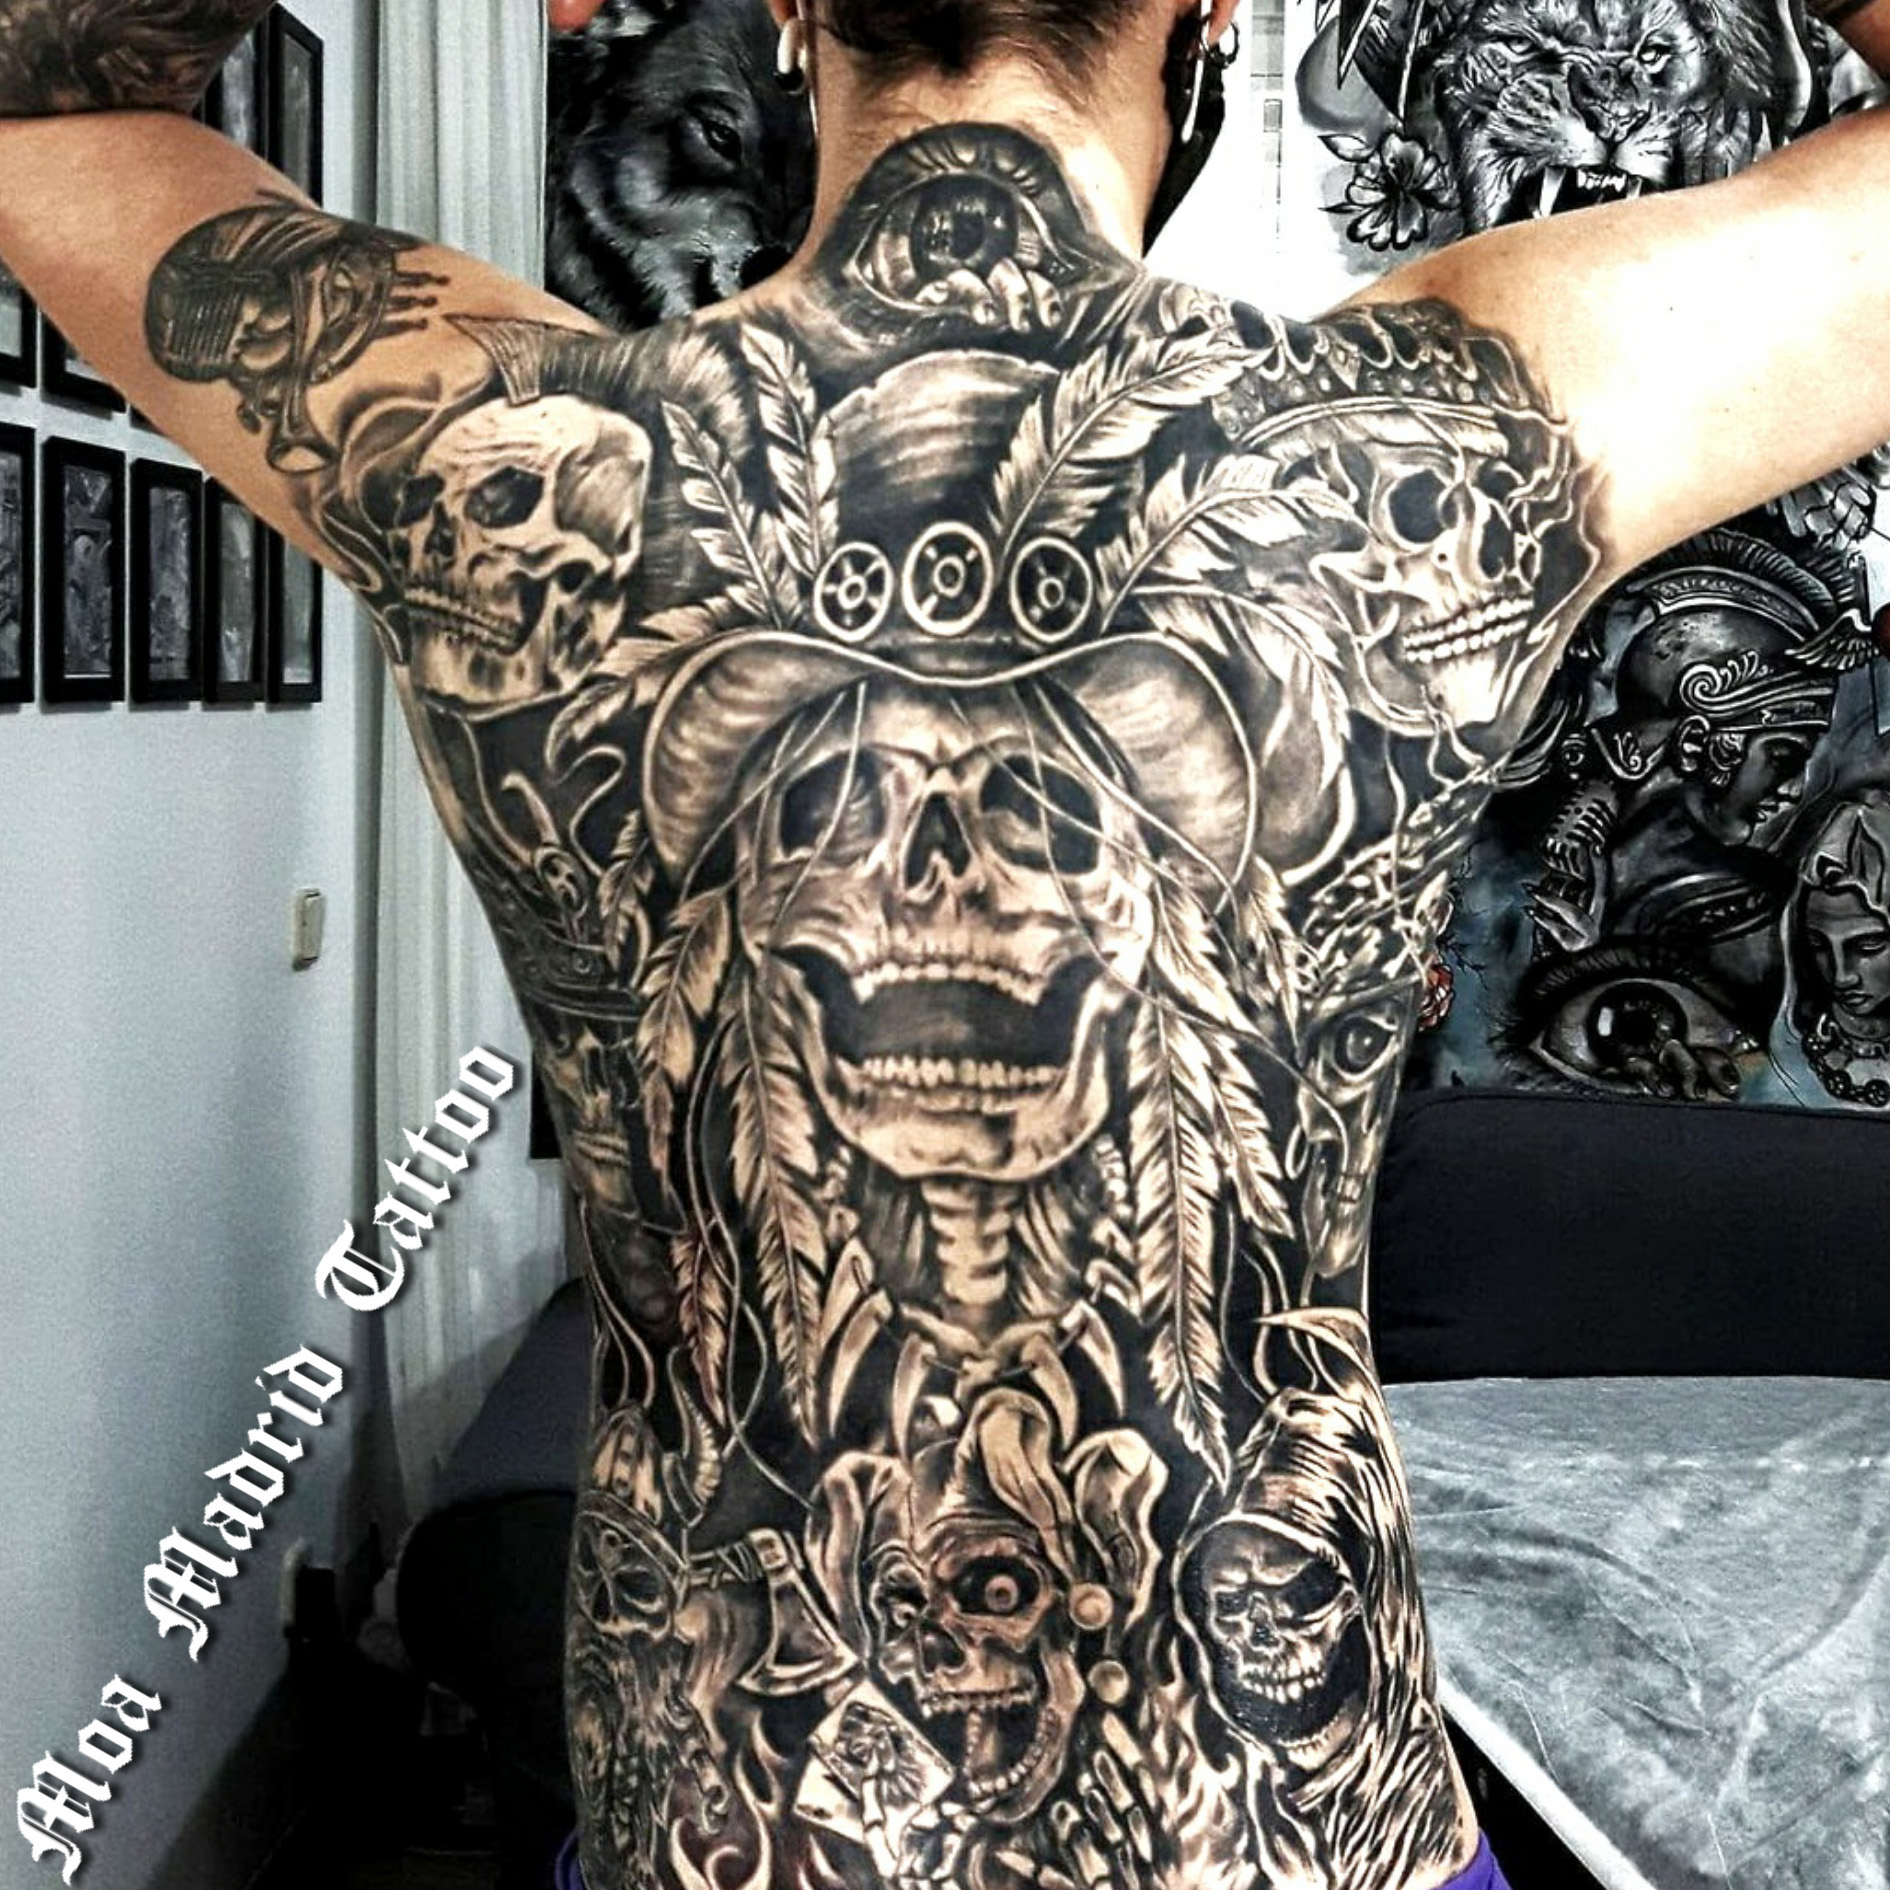 Una multitud de calaveras forman este espectacular tattoo que ocupa toda la espalda